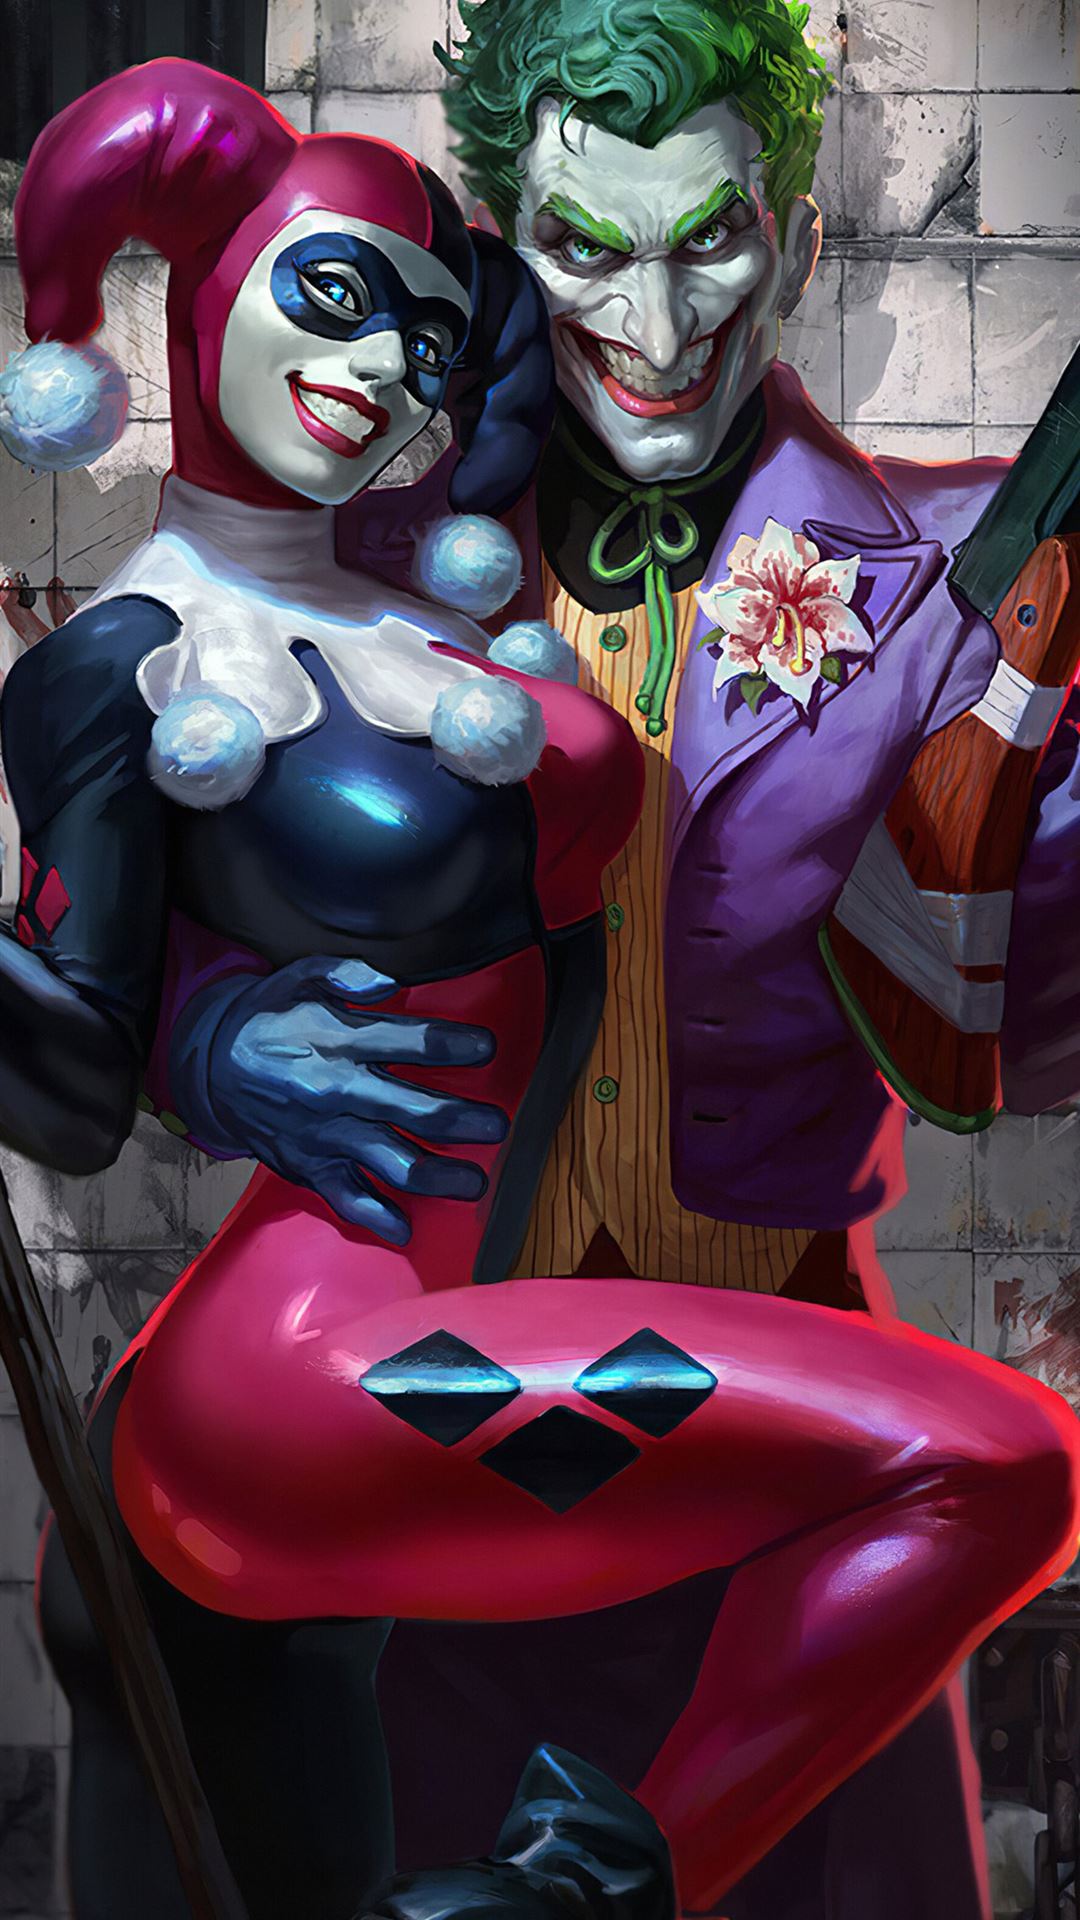 Joker Harley Quinn - Hài hước Tận hưởng những giây phút thảnh thơi và tươi cười với bộ đôi Joker và Harley Quinn trong ảnh này. Hai nhân vật có tính cách đặc biệt và tạo ra những câu chuyện hài hước khiến bạn không thể rời mắt. Hãy nhấp vào ảnh và cùng nhận được những tiếng cười tươi vui.